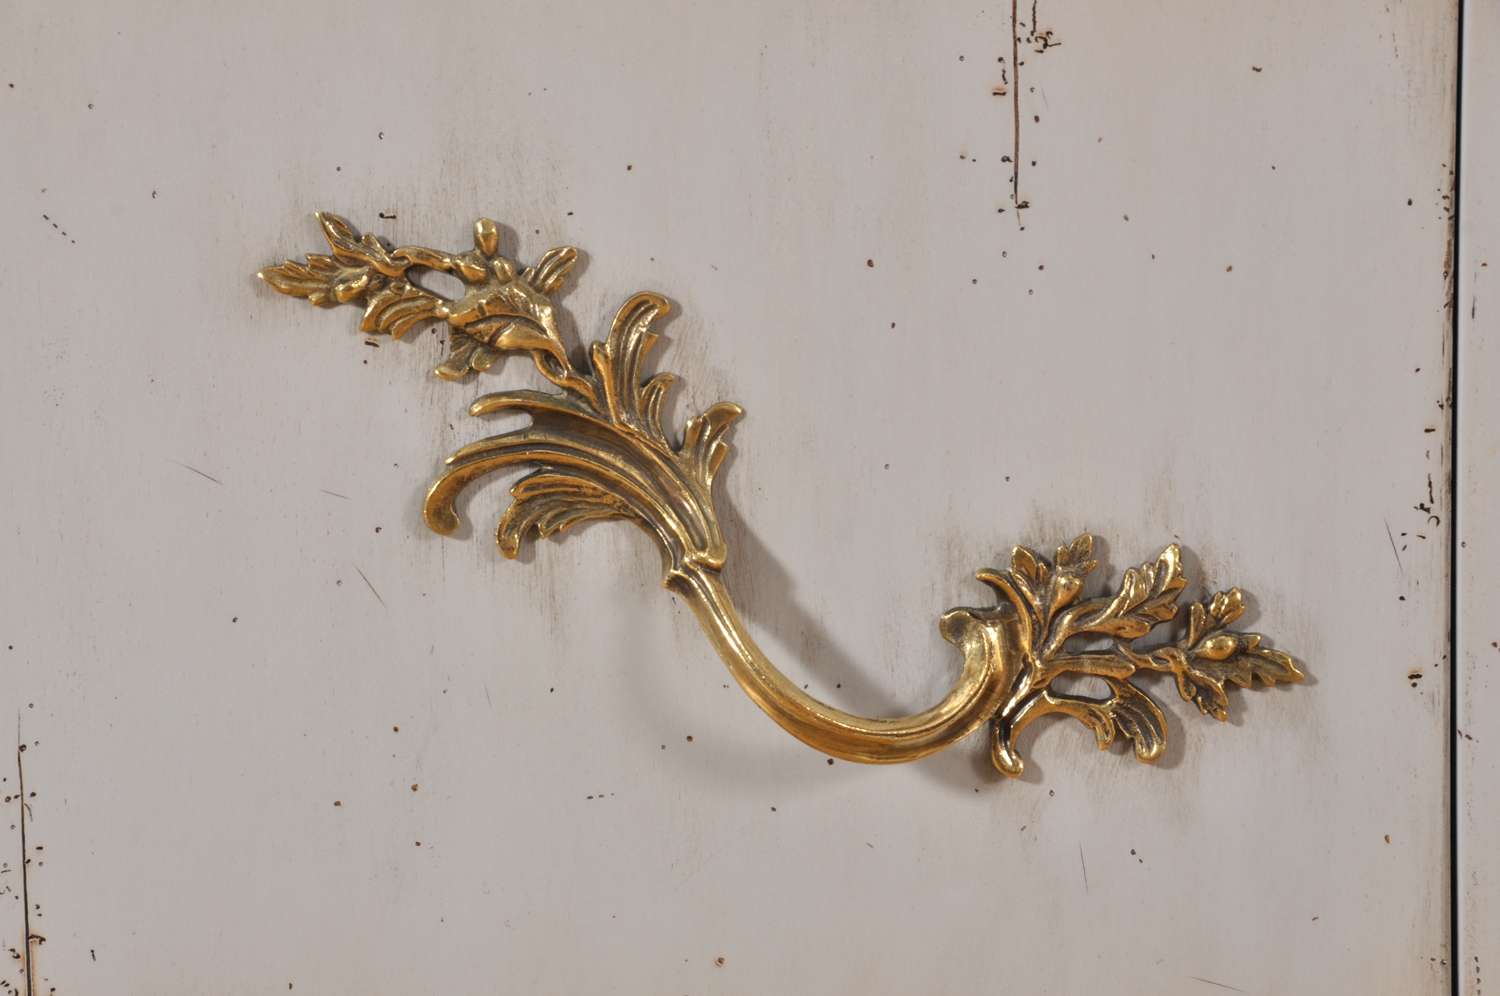 maniglie Luigi XV cesellata a mano in ottone massiccio costruita come l’accessorio d’epoca del modello originale esclusive lavorazioni di lusso made in Italy